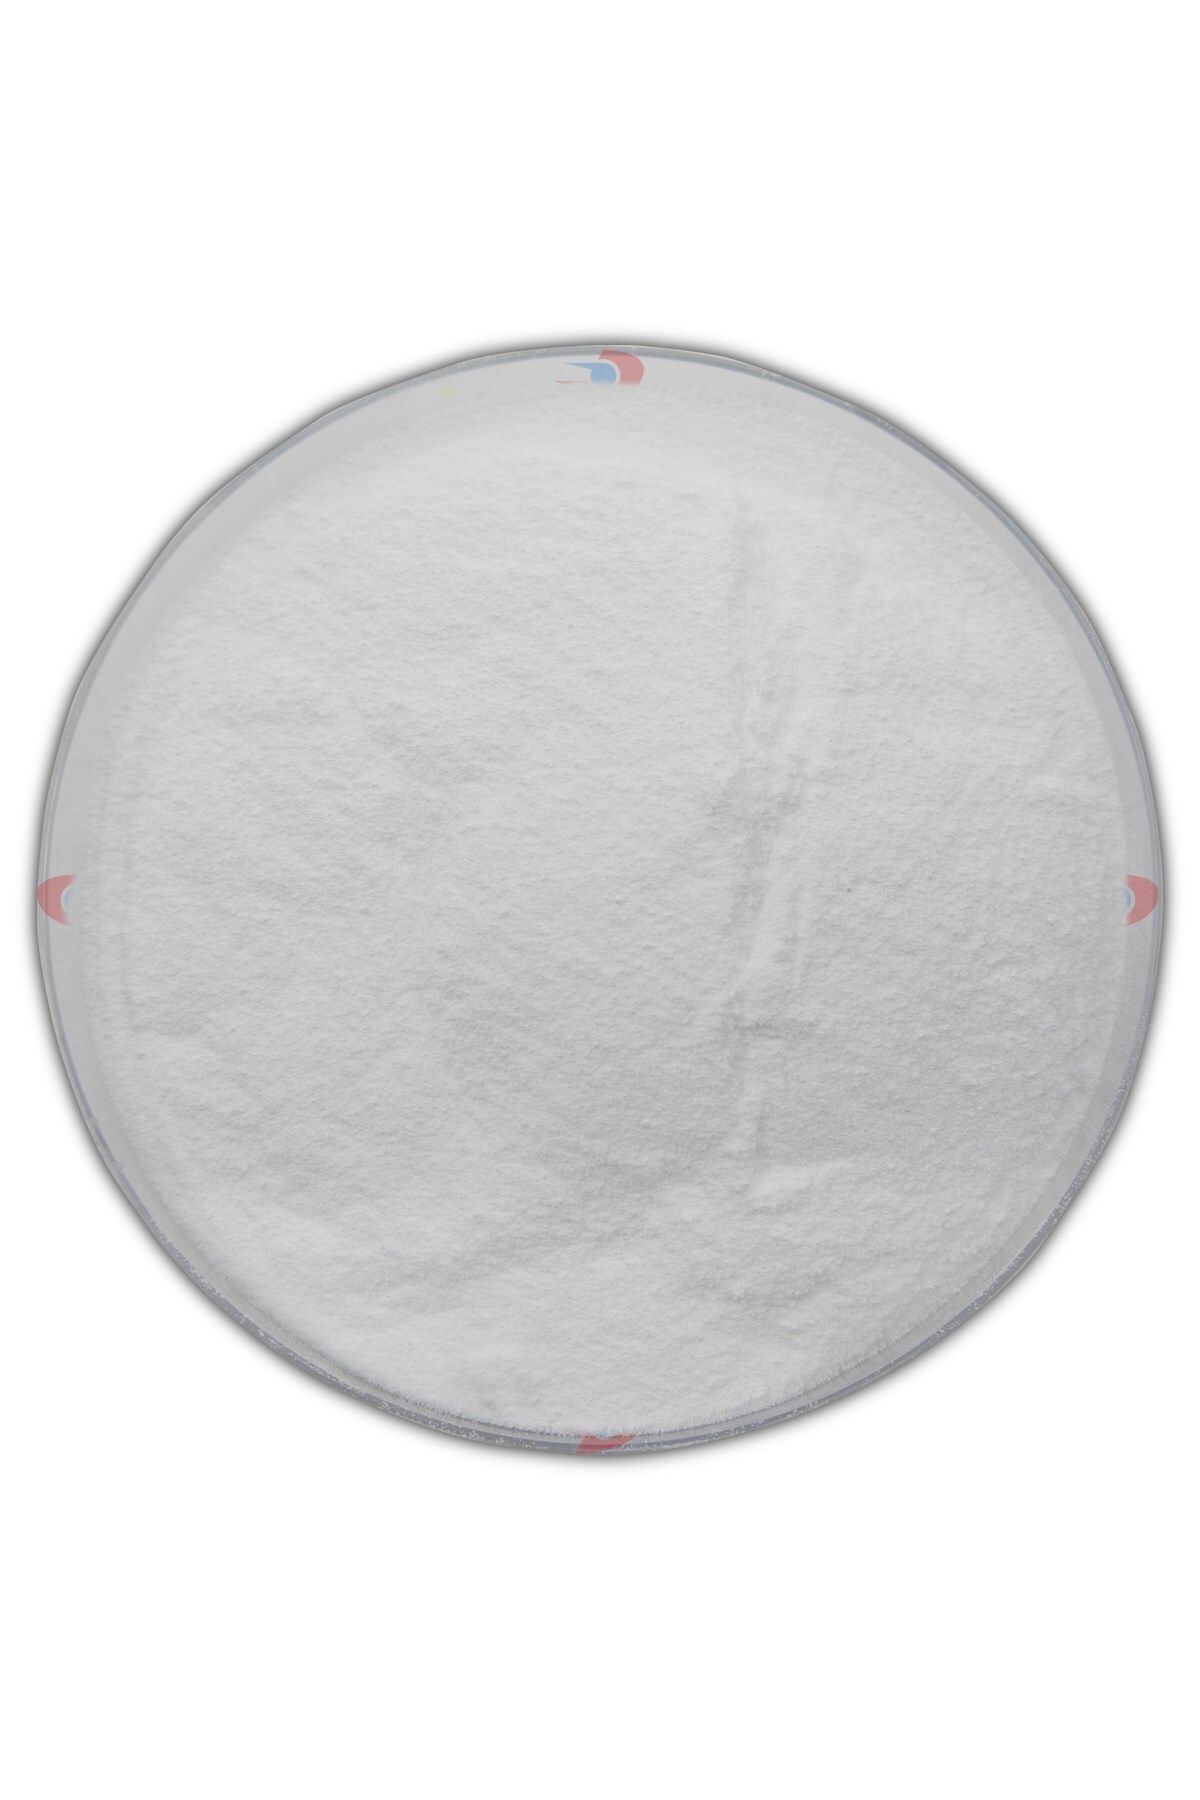 Dolar Kimya Hafif Soda | 5.00 kg (Sodyum Karbonat,Çamaşır Sodası,Soda Külü)